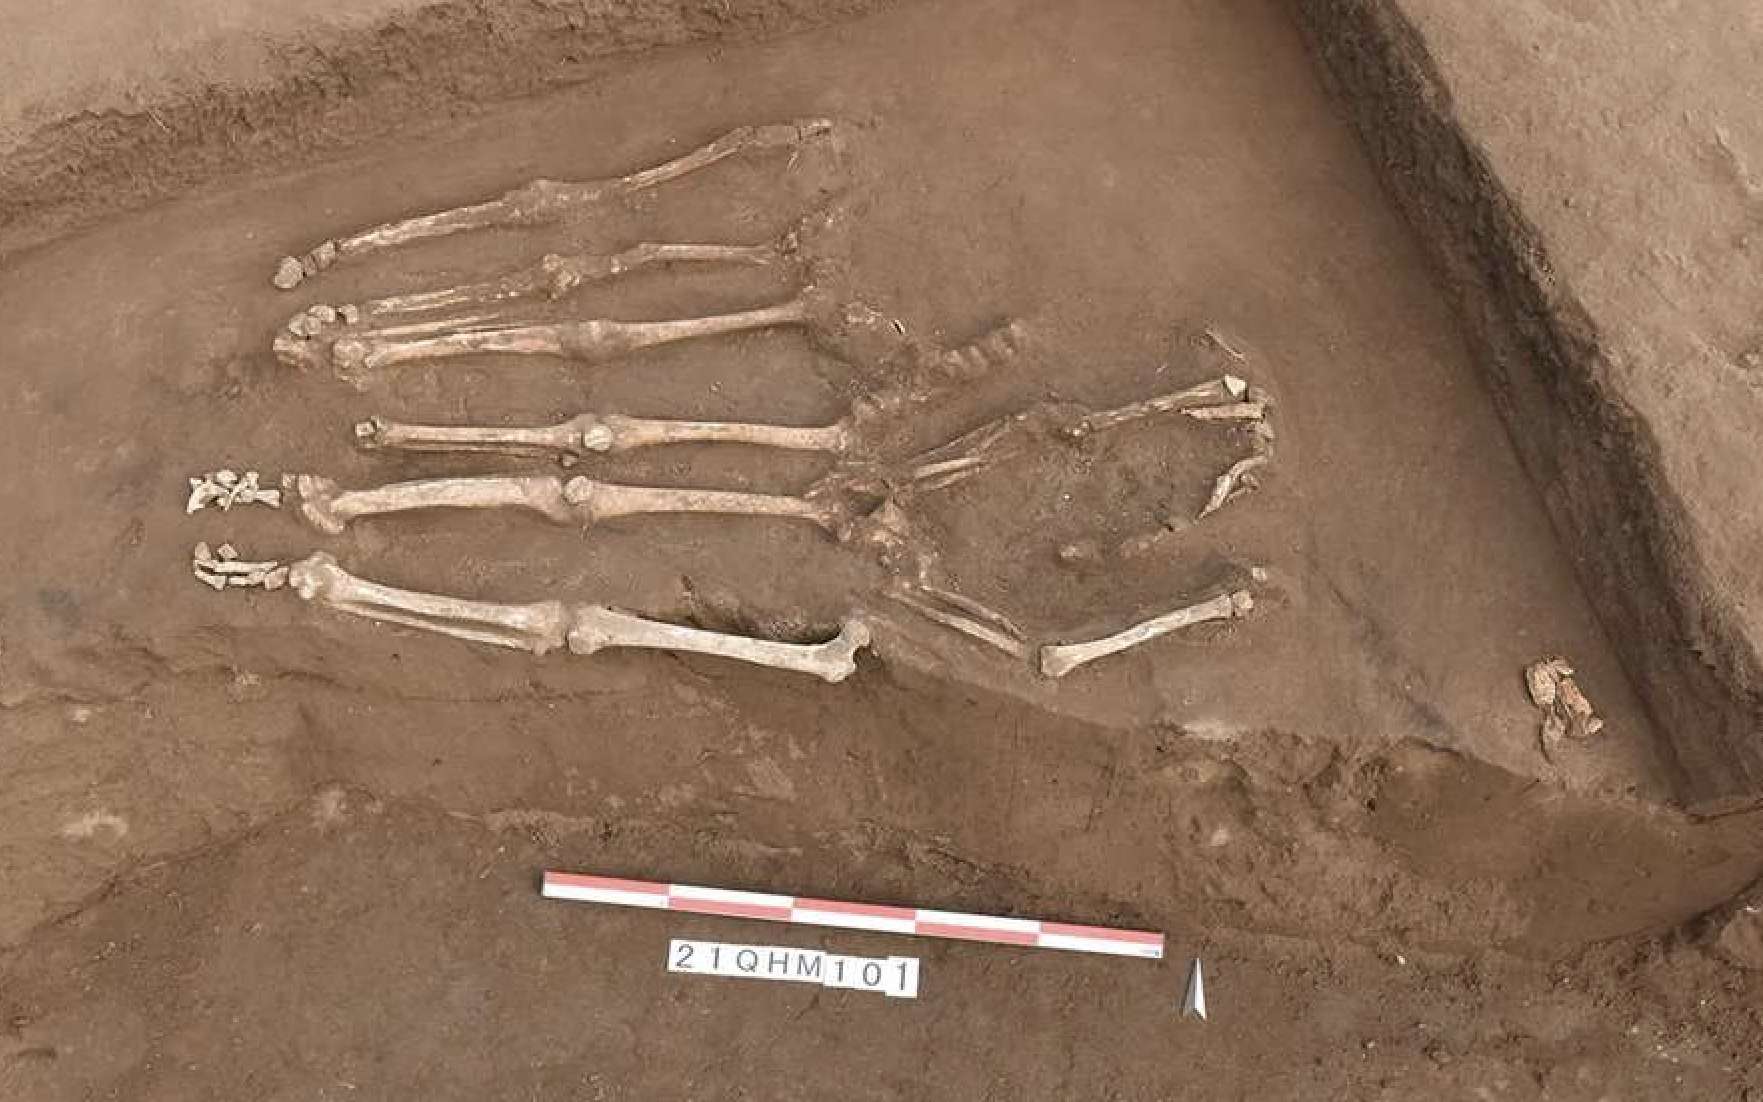 Découverte de 41 squelettes décapités dans un charnier du Néolithique en Chine